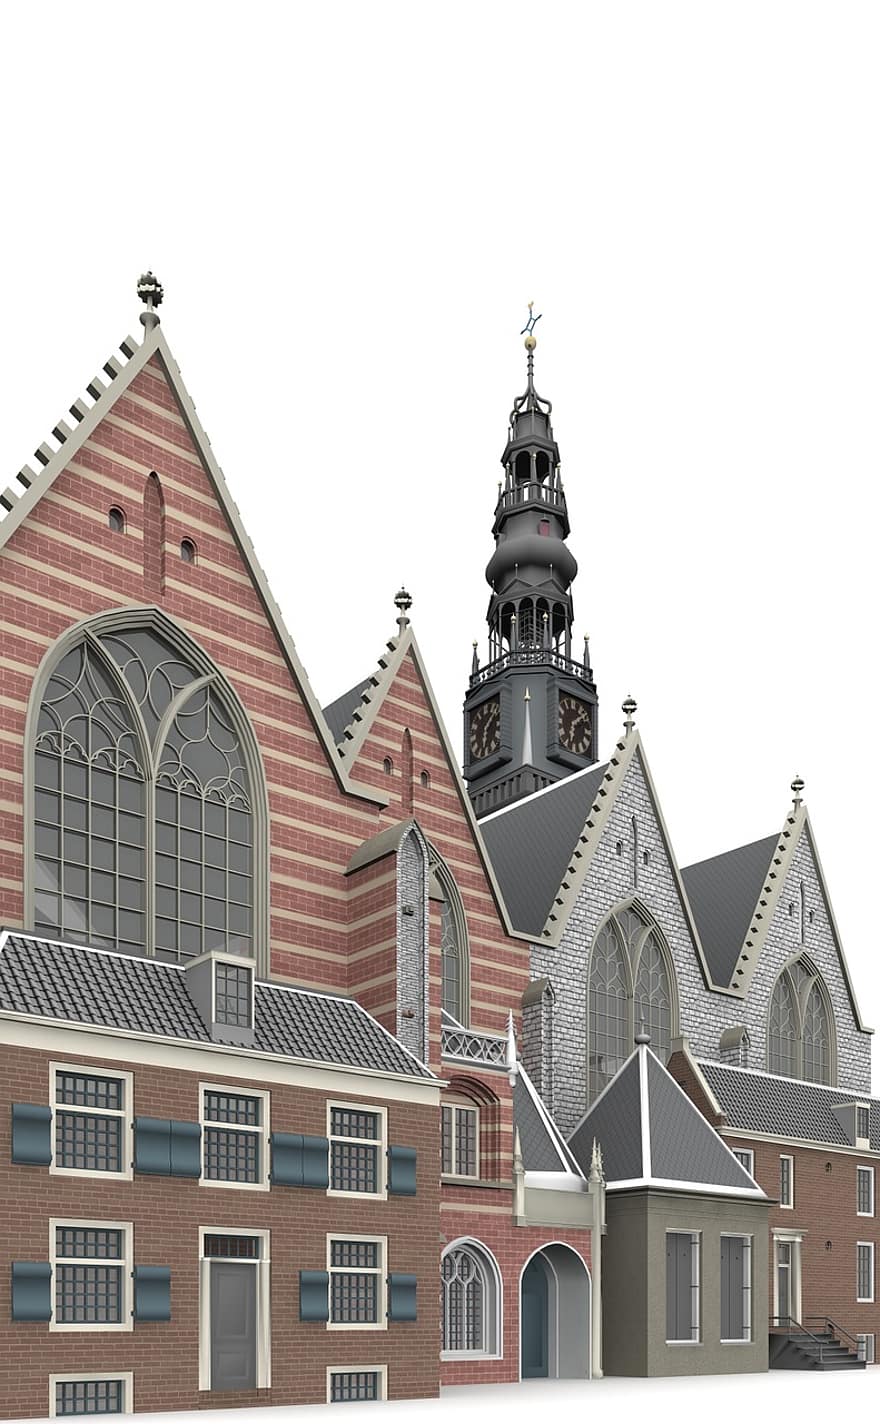 عود ، كرك ، امستردام ، هندسة معمارية ، بناء ، كنيسة ، الأماكن ذات الأهمية ، تاريخيا ، سياح ، جاذبية ، معلم معروف